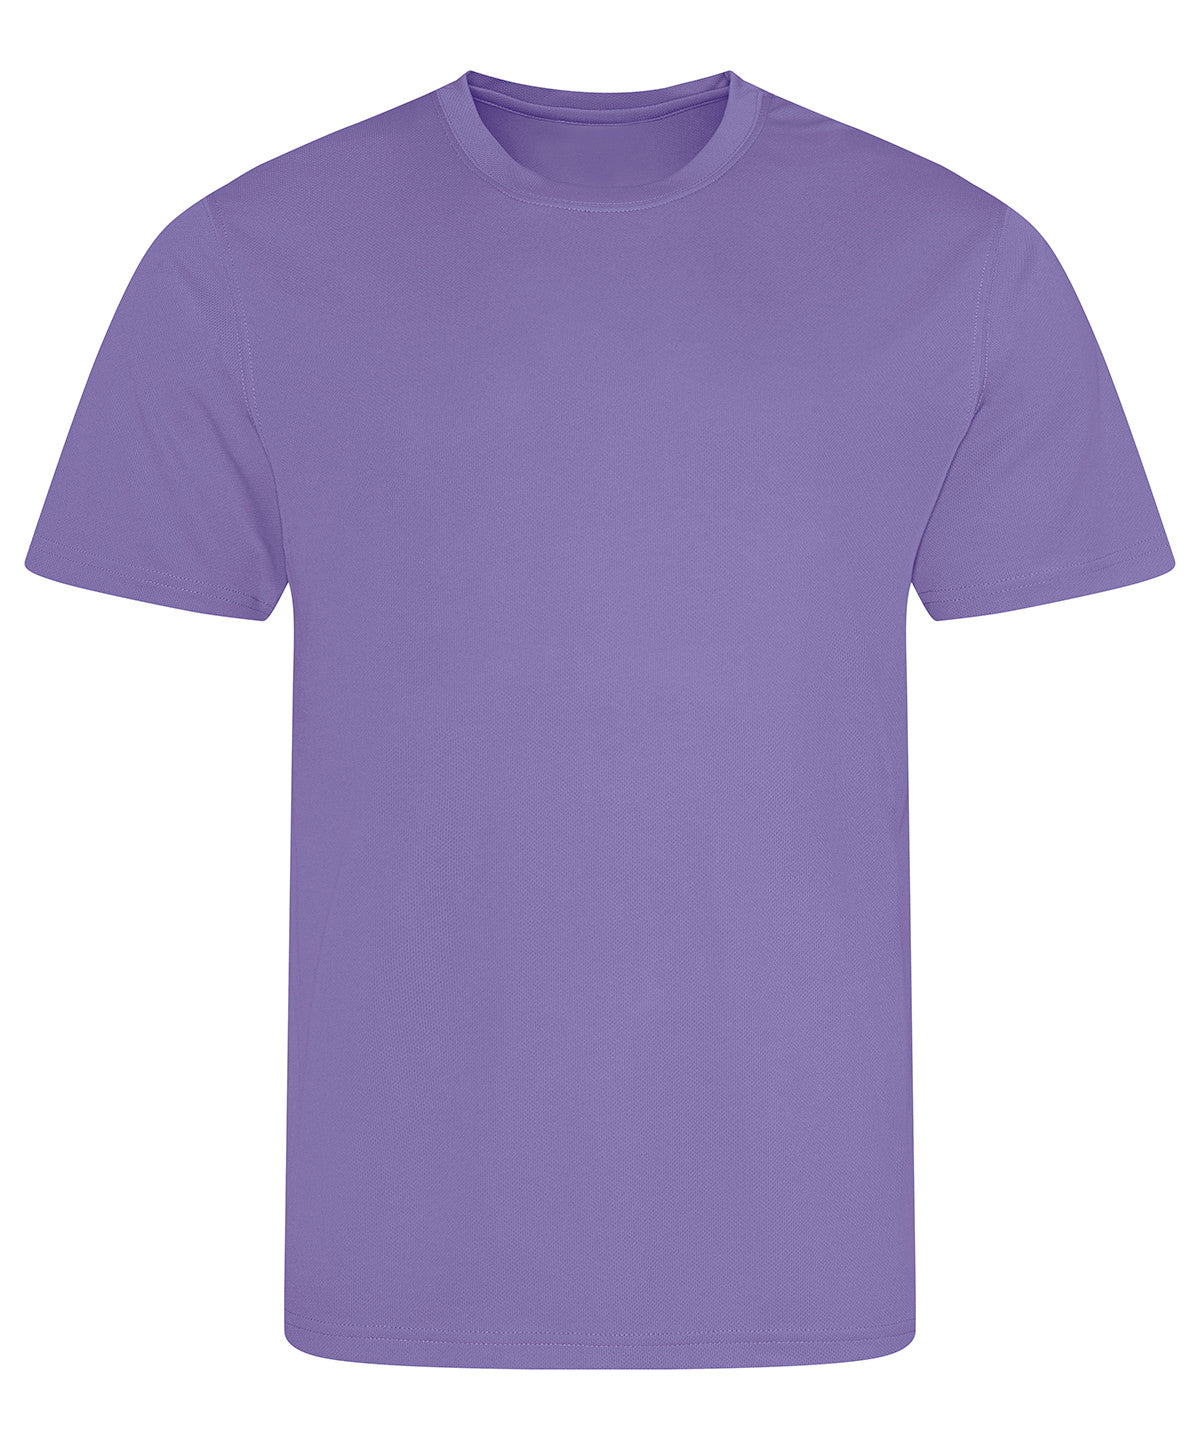 AWDis Cool T-Shirt - Vibrant Colours